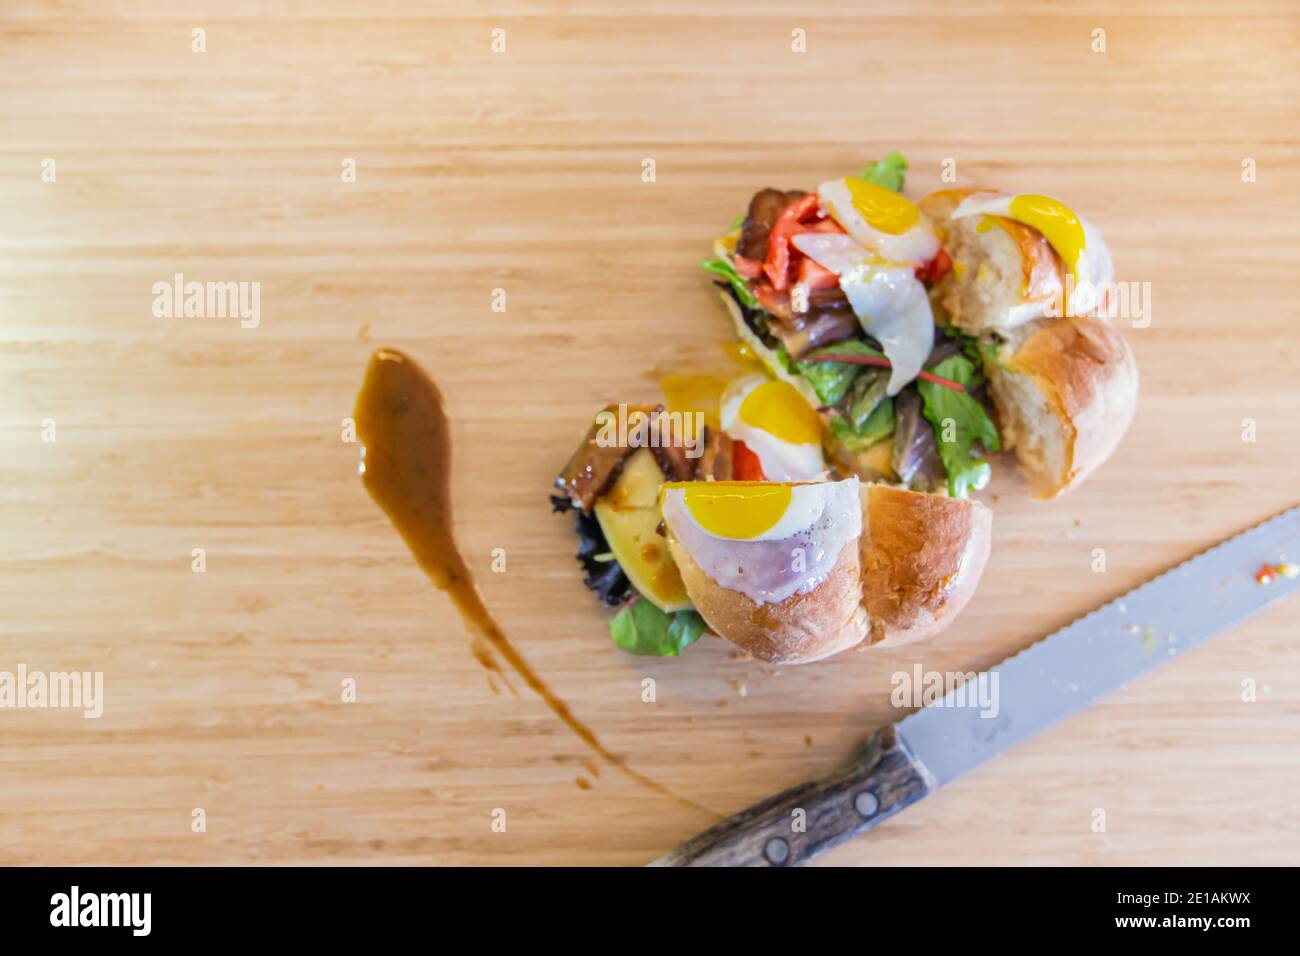 Sandwich complètement farci, coupé en deux, avec des œufs de caille frits et des feuilles vertes, avec un peu de sauce coulée sur le côté, un couteau à découper est placé à côté Banque D'Images